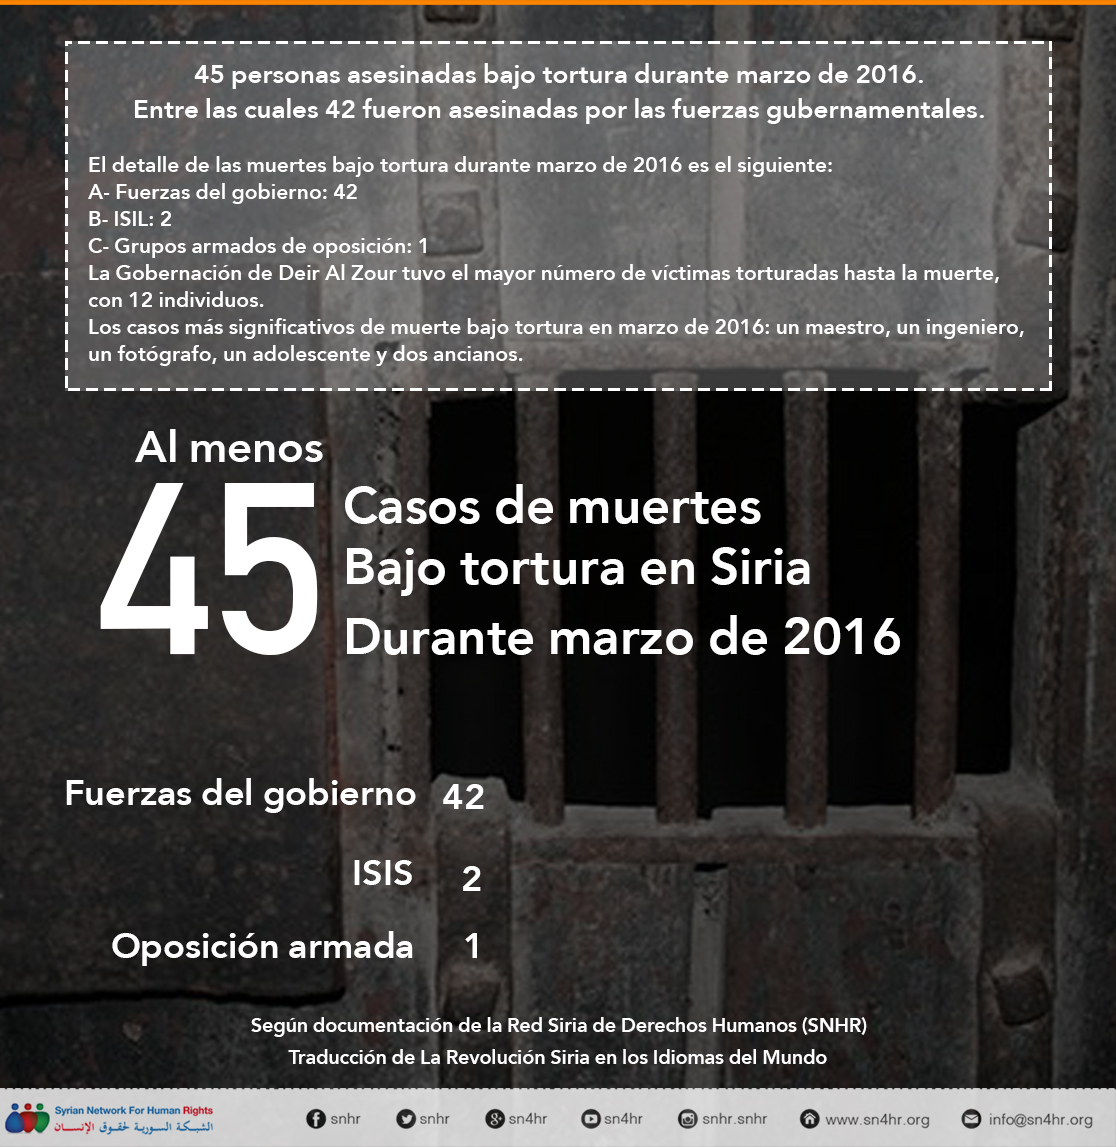 45 personas asesinadas bajo tortura durante marzo de 2016 (1)